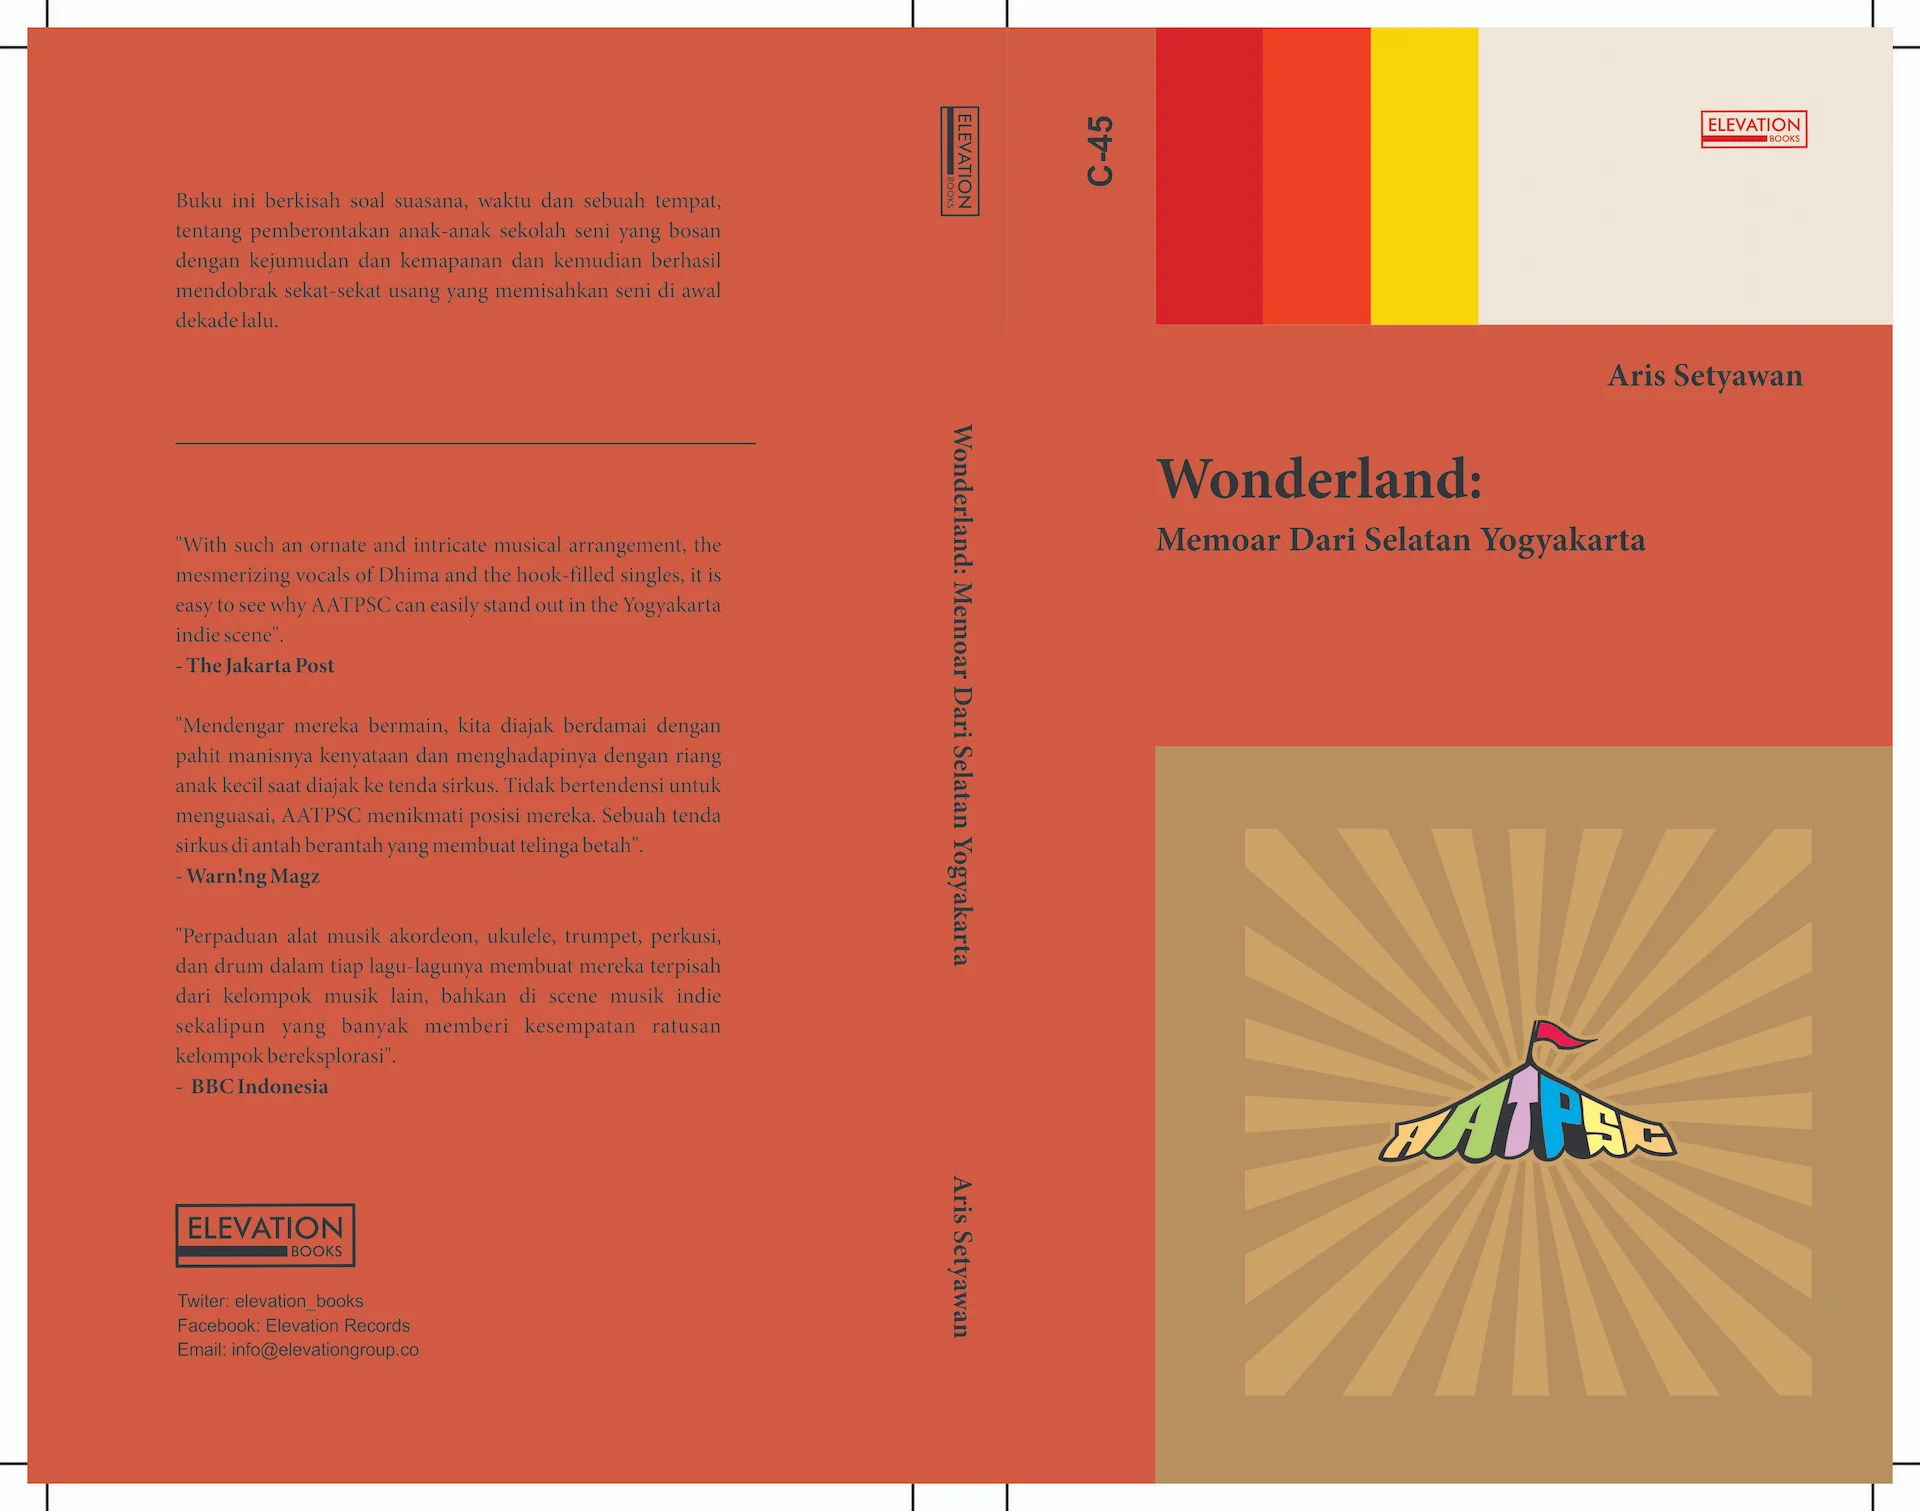 wonderland: memoar dari selatan yogyakarta